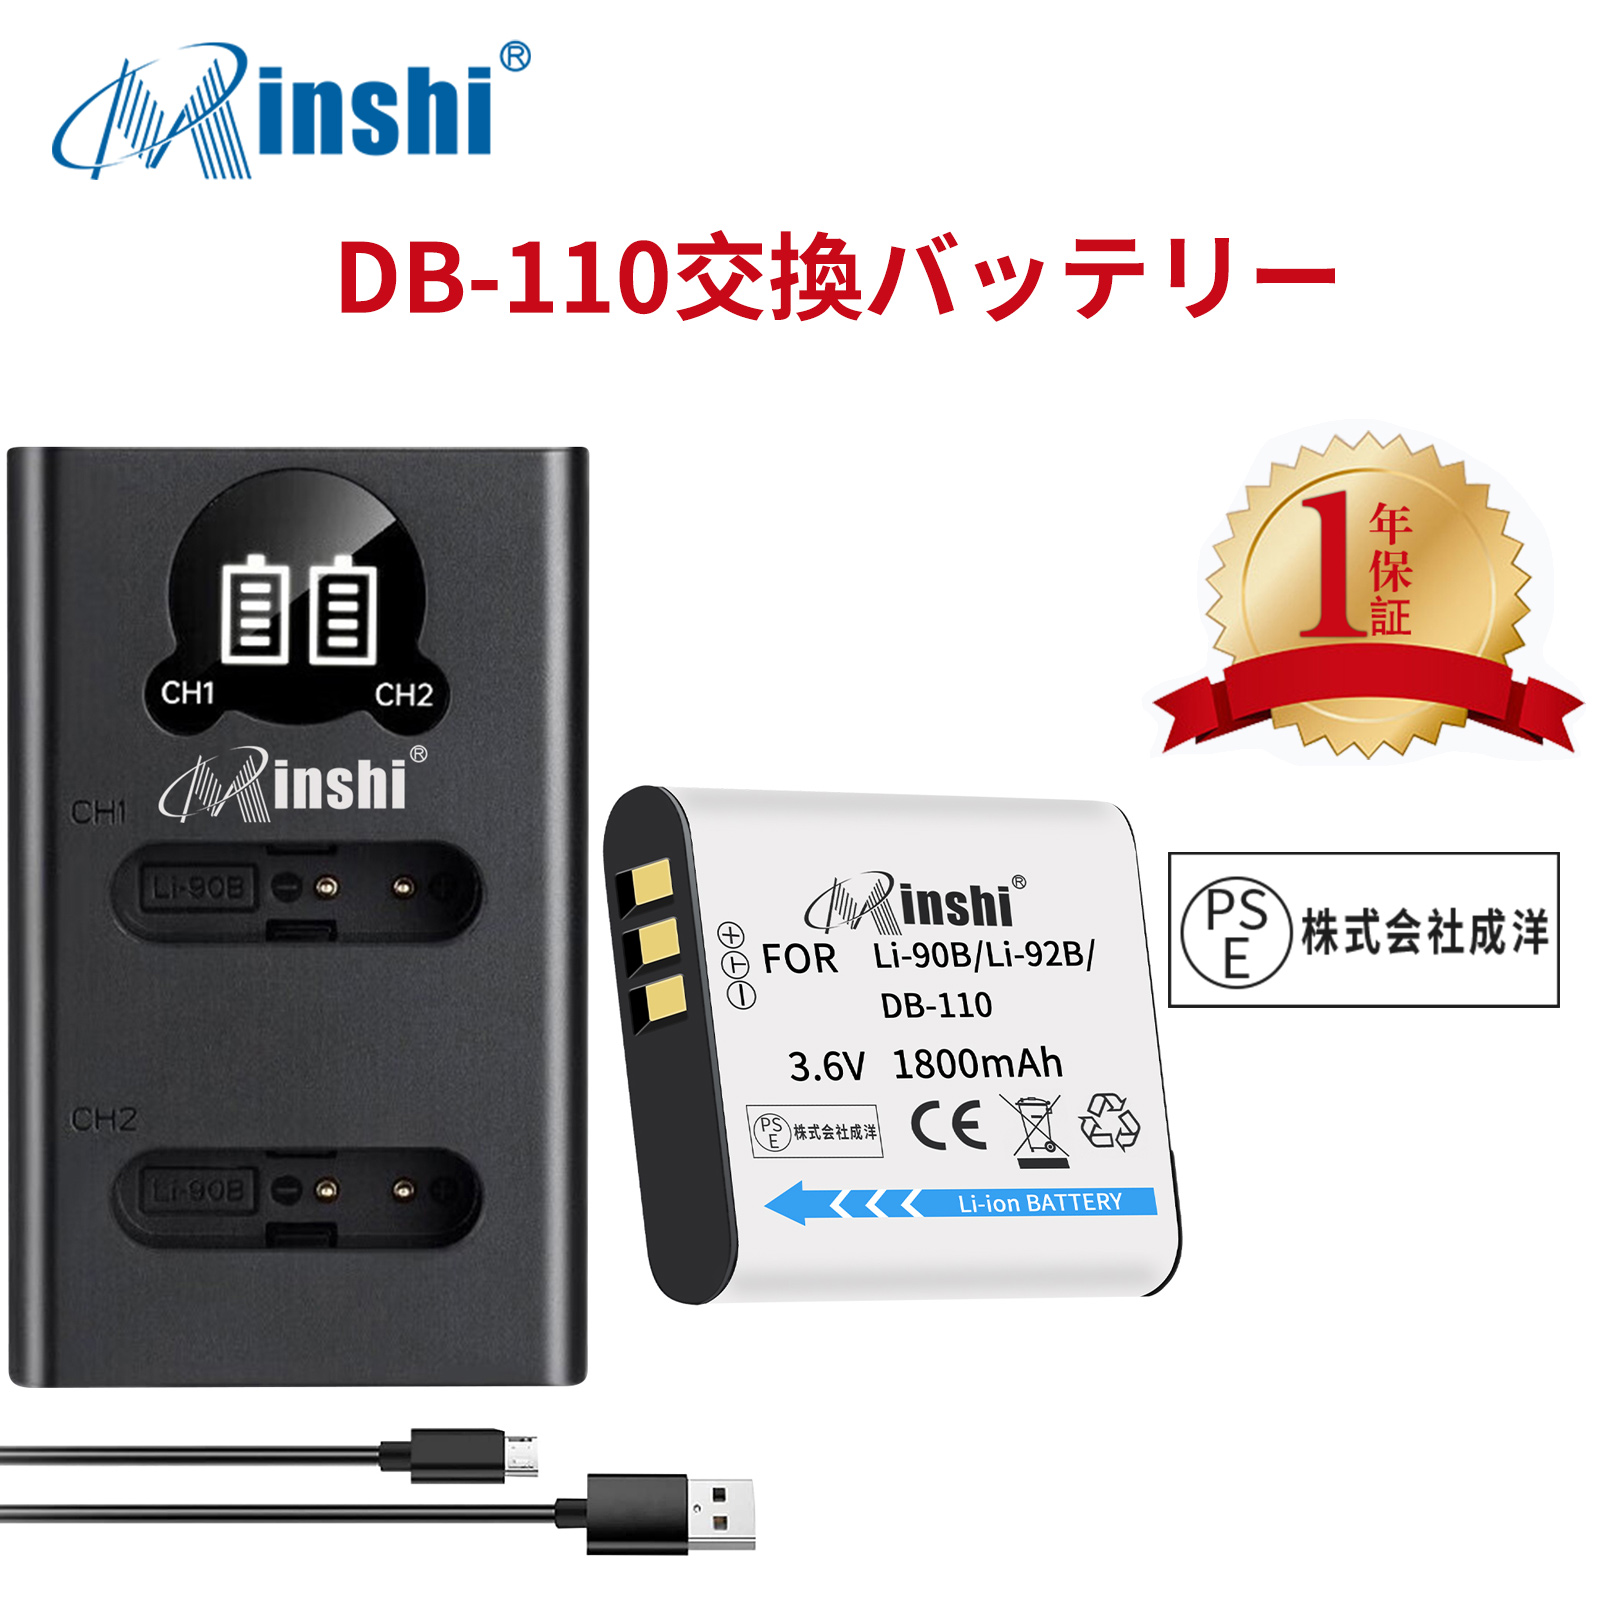 【1年保証】minshi OLYMPUS Stylus SH-2 【1800mAh 3.6V】【互換急速USBチャージャー】 高品質LI-92B互換バッテリーWHG